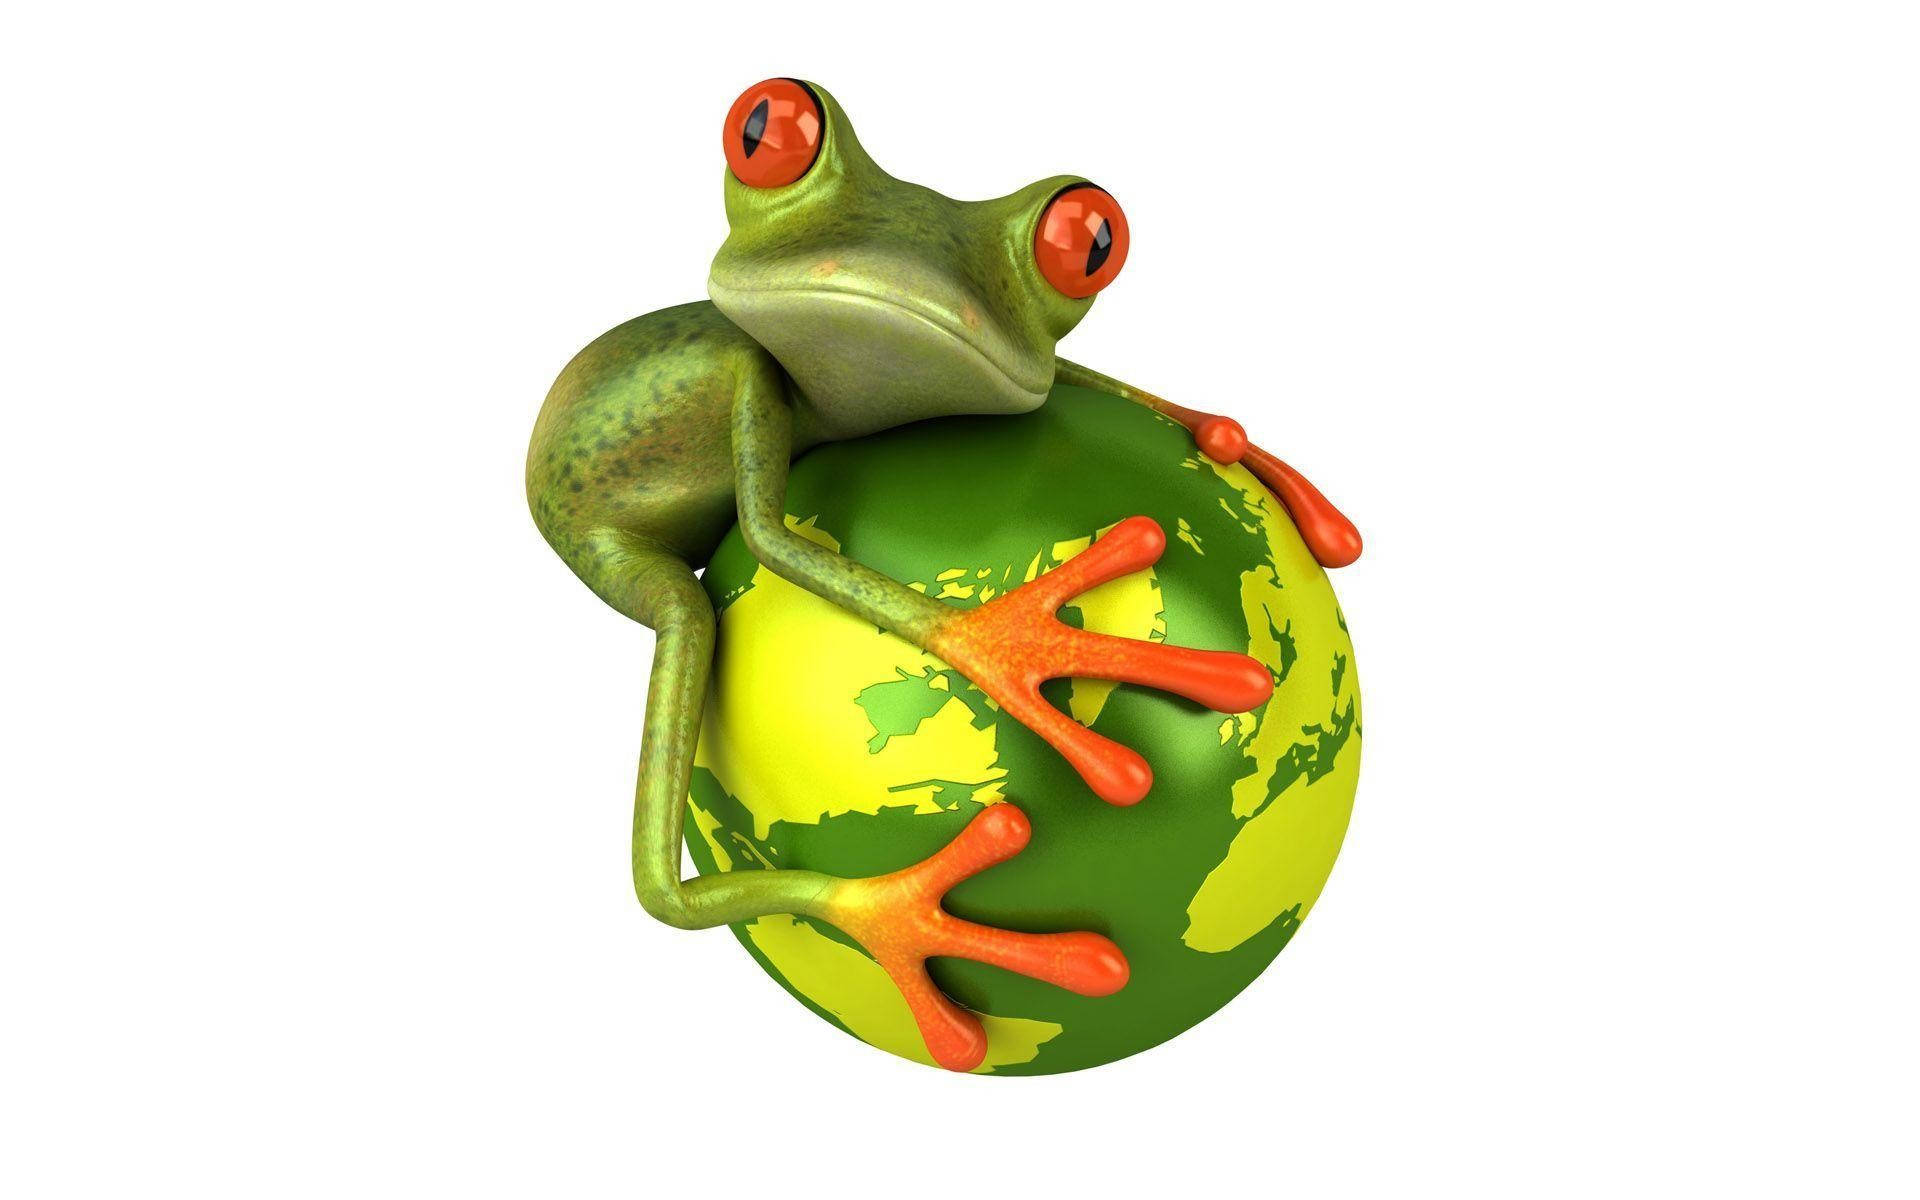 12608 Frog Wallpaper Images Stock Photos  Vectors  Shutterstock